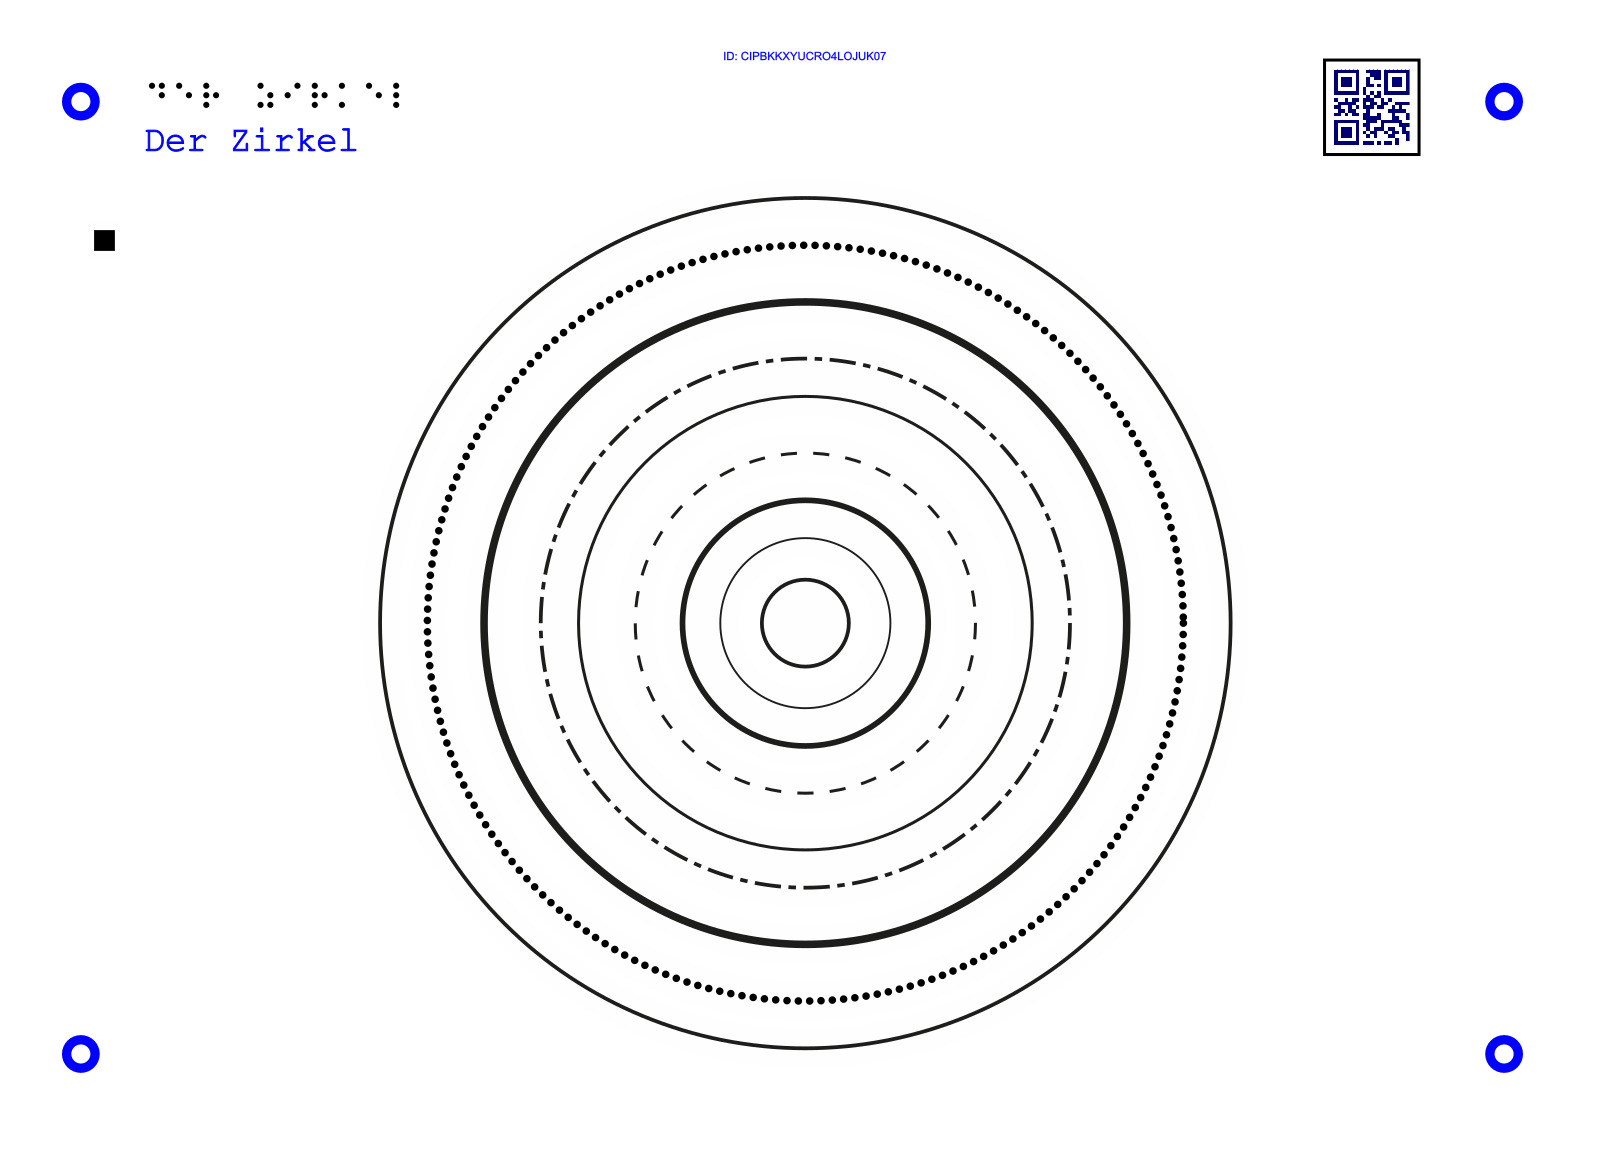 11Taktile Grafik, mit der man Audioinfo über den Zustand eines Zirkels bekommt.